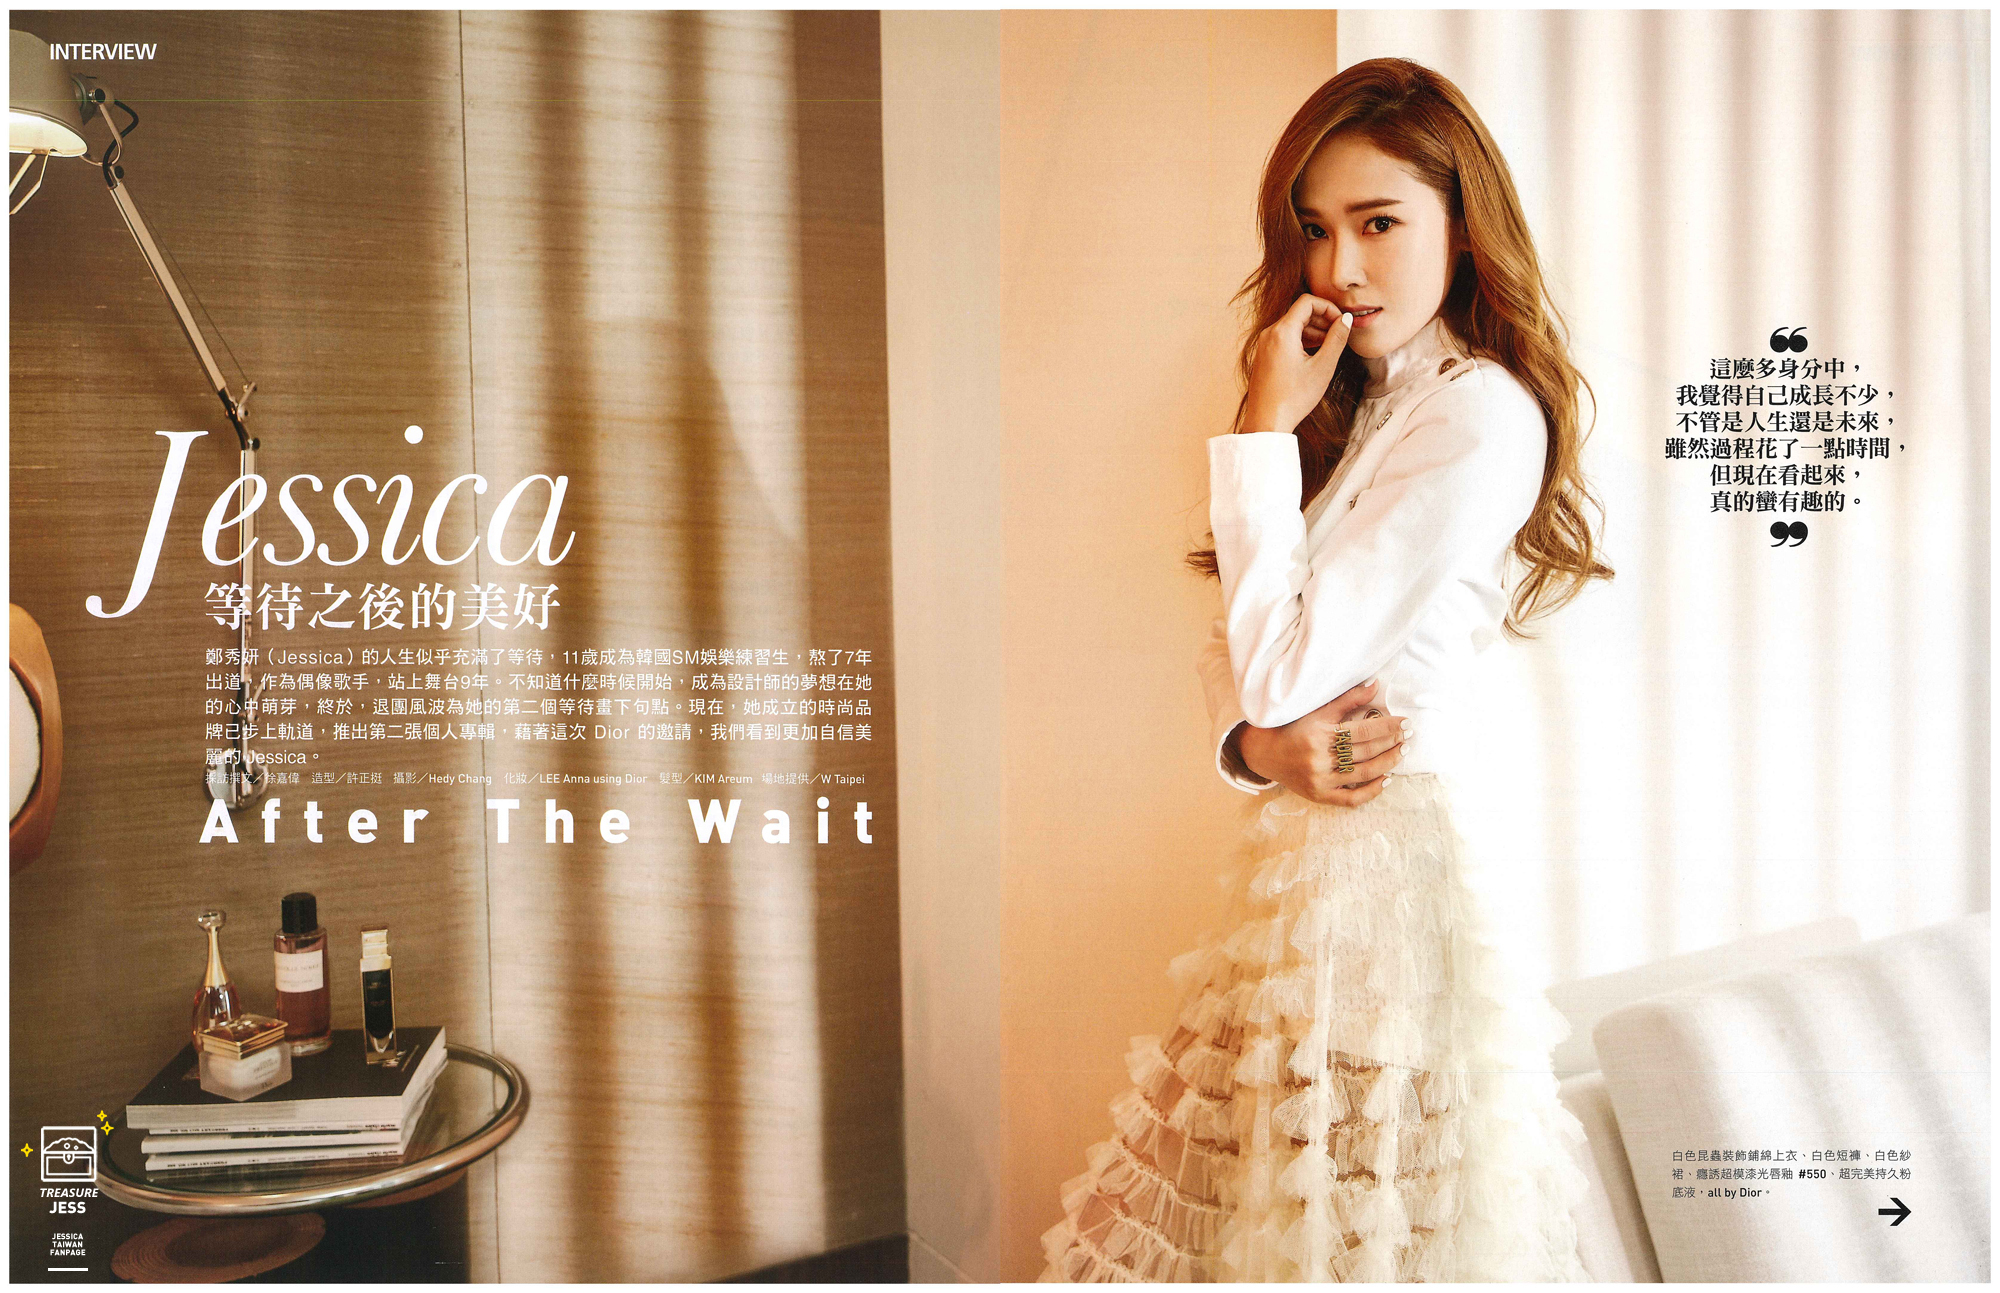 [PIC][18-02-2017]Jessica xuất hiện trên ấn phẩm tháng 3 của tạp chí "Marie Claire Taiwan" 2350B13358BBFE662F622C